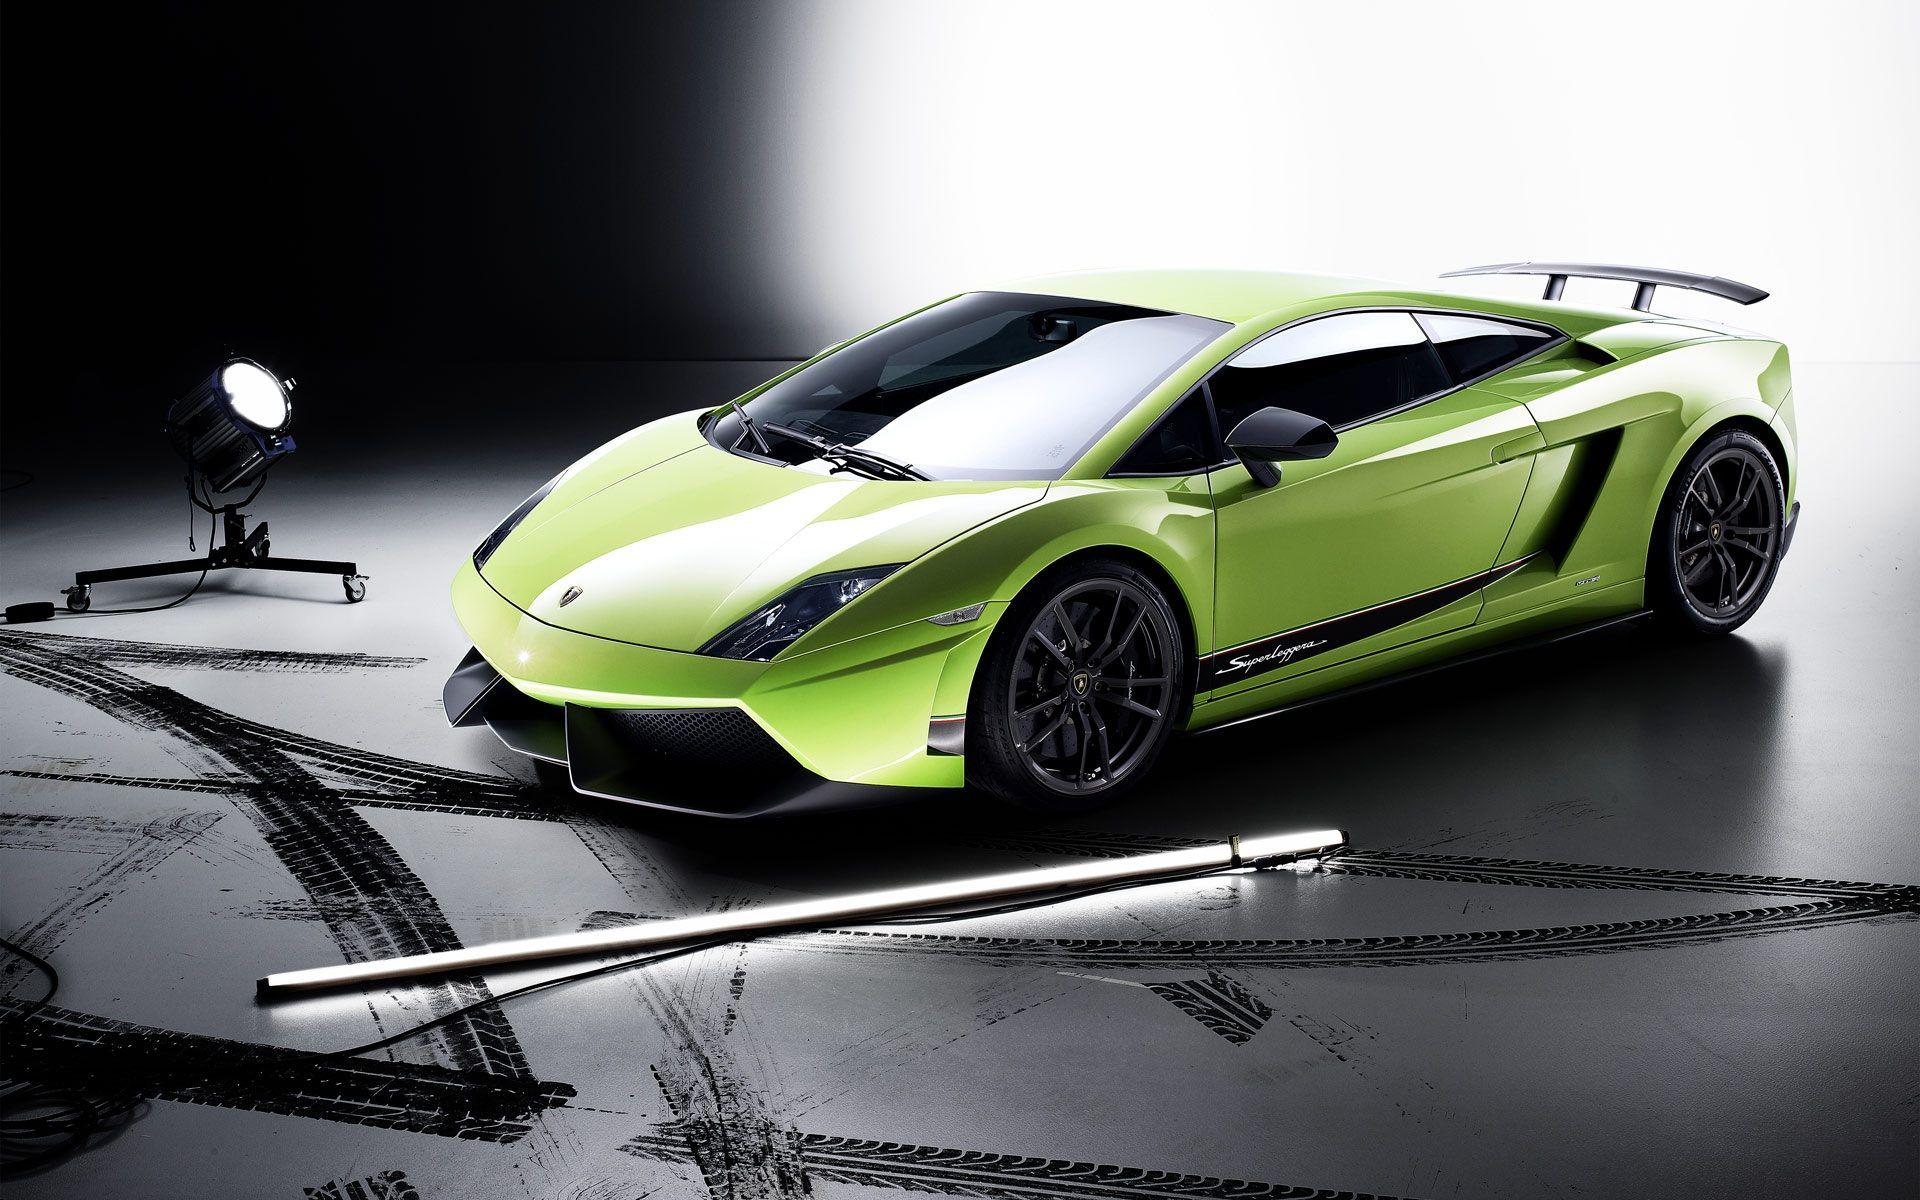 Hình nền 1920x1200 Màu xanh lá cây Lamborghini 1920x1200 Hình ảnh HD, Hình ảnh